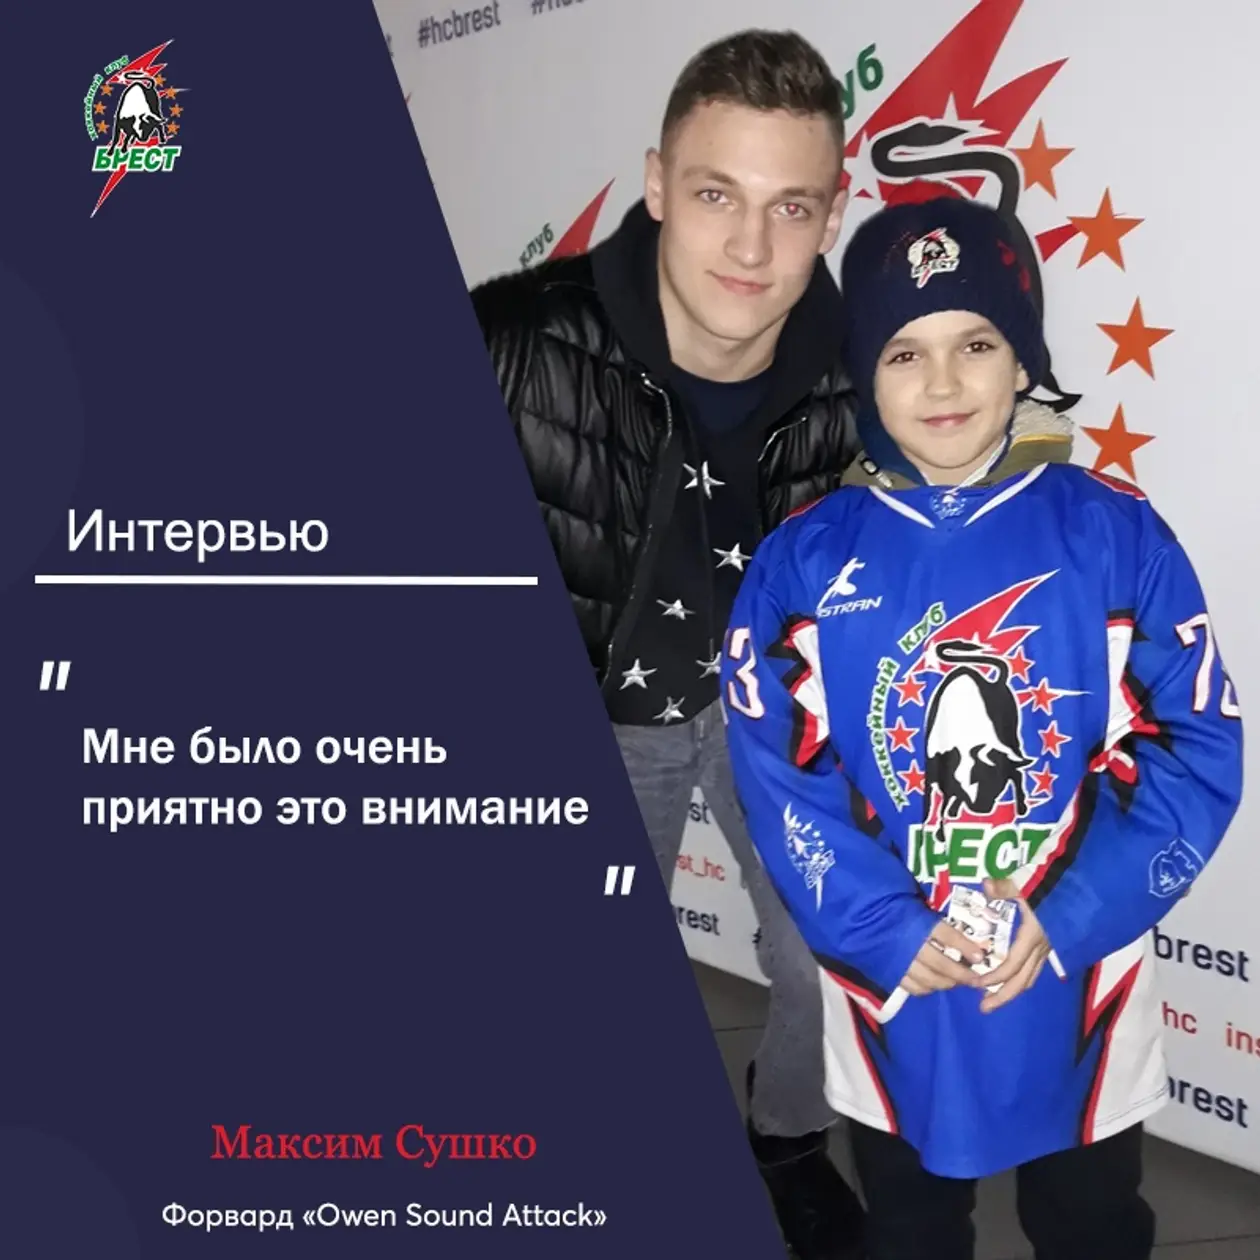 Максим Сушко встретился с брестскими болельщиками и дал небольшое интервью